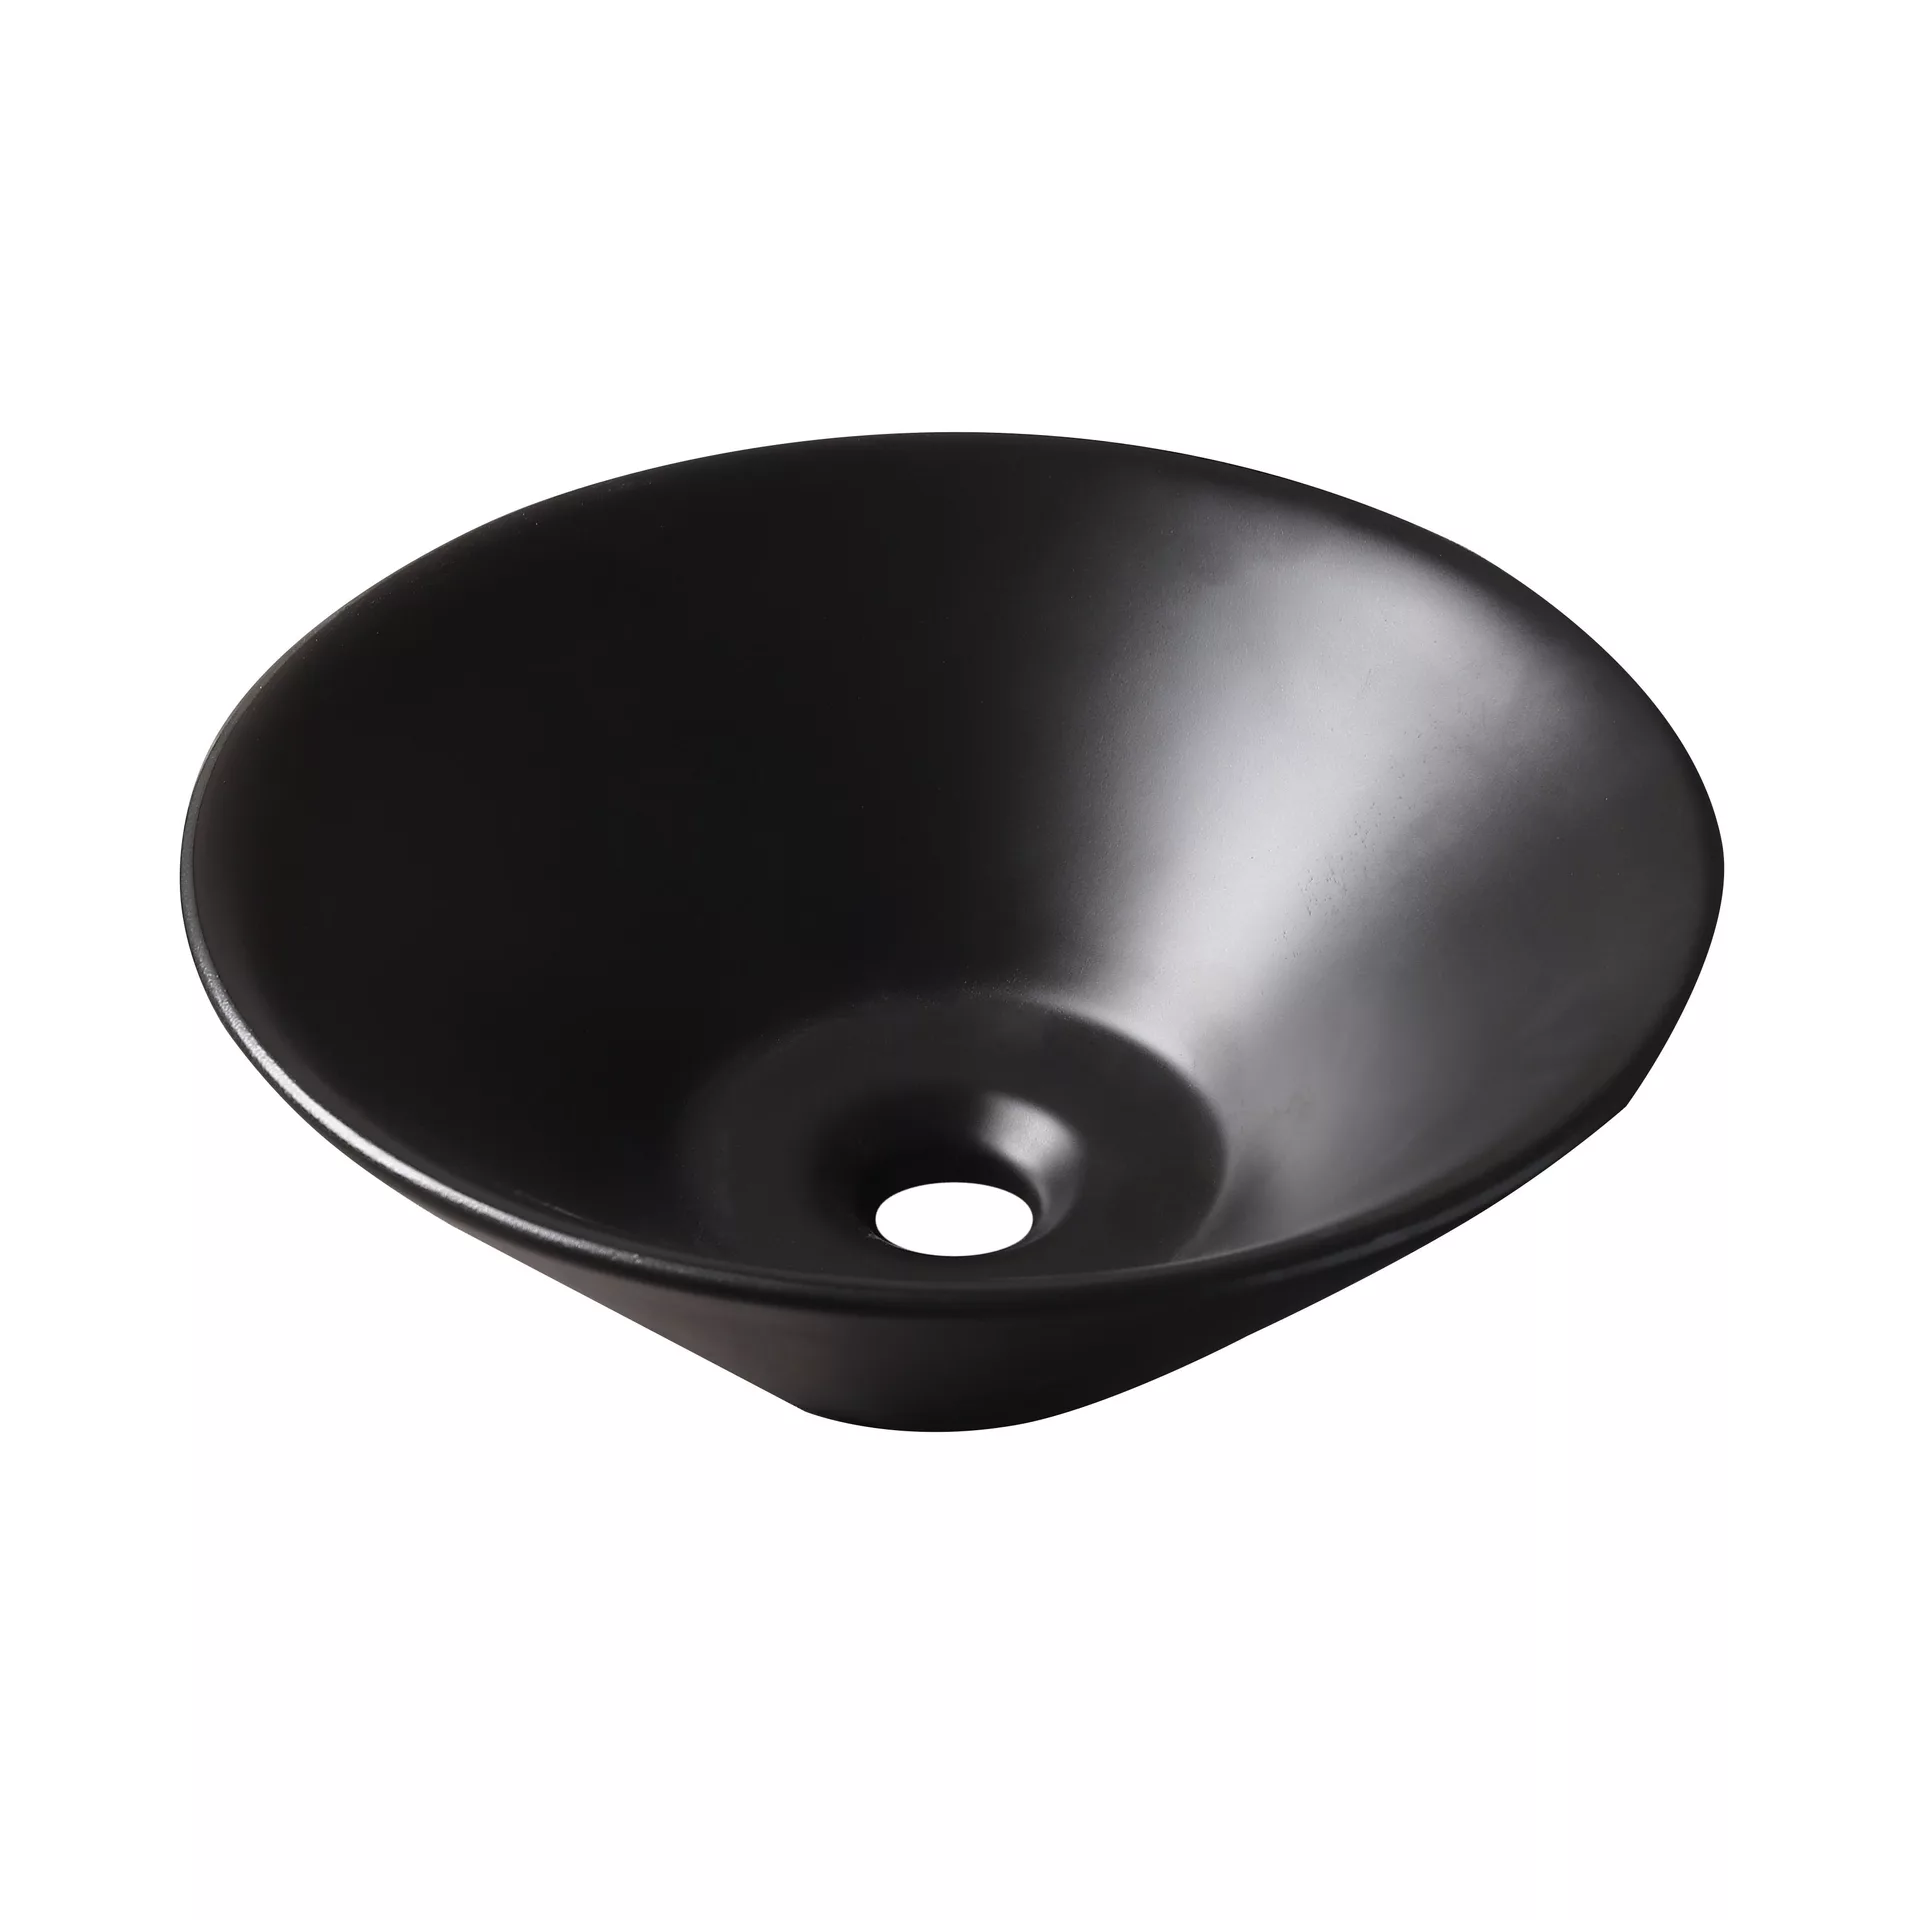 Накладная раковина для ванной GiD N9102bg черная керамическая раковина накладная bond s57 388 квадратная 38 38 13 5см черная